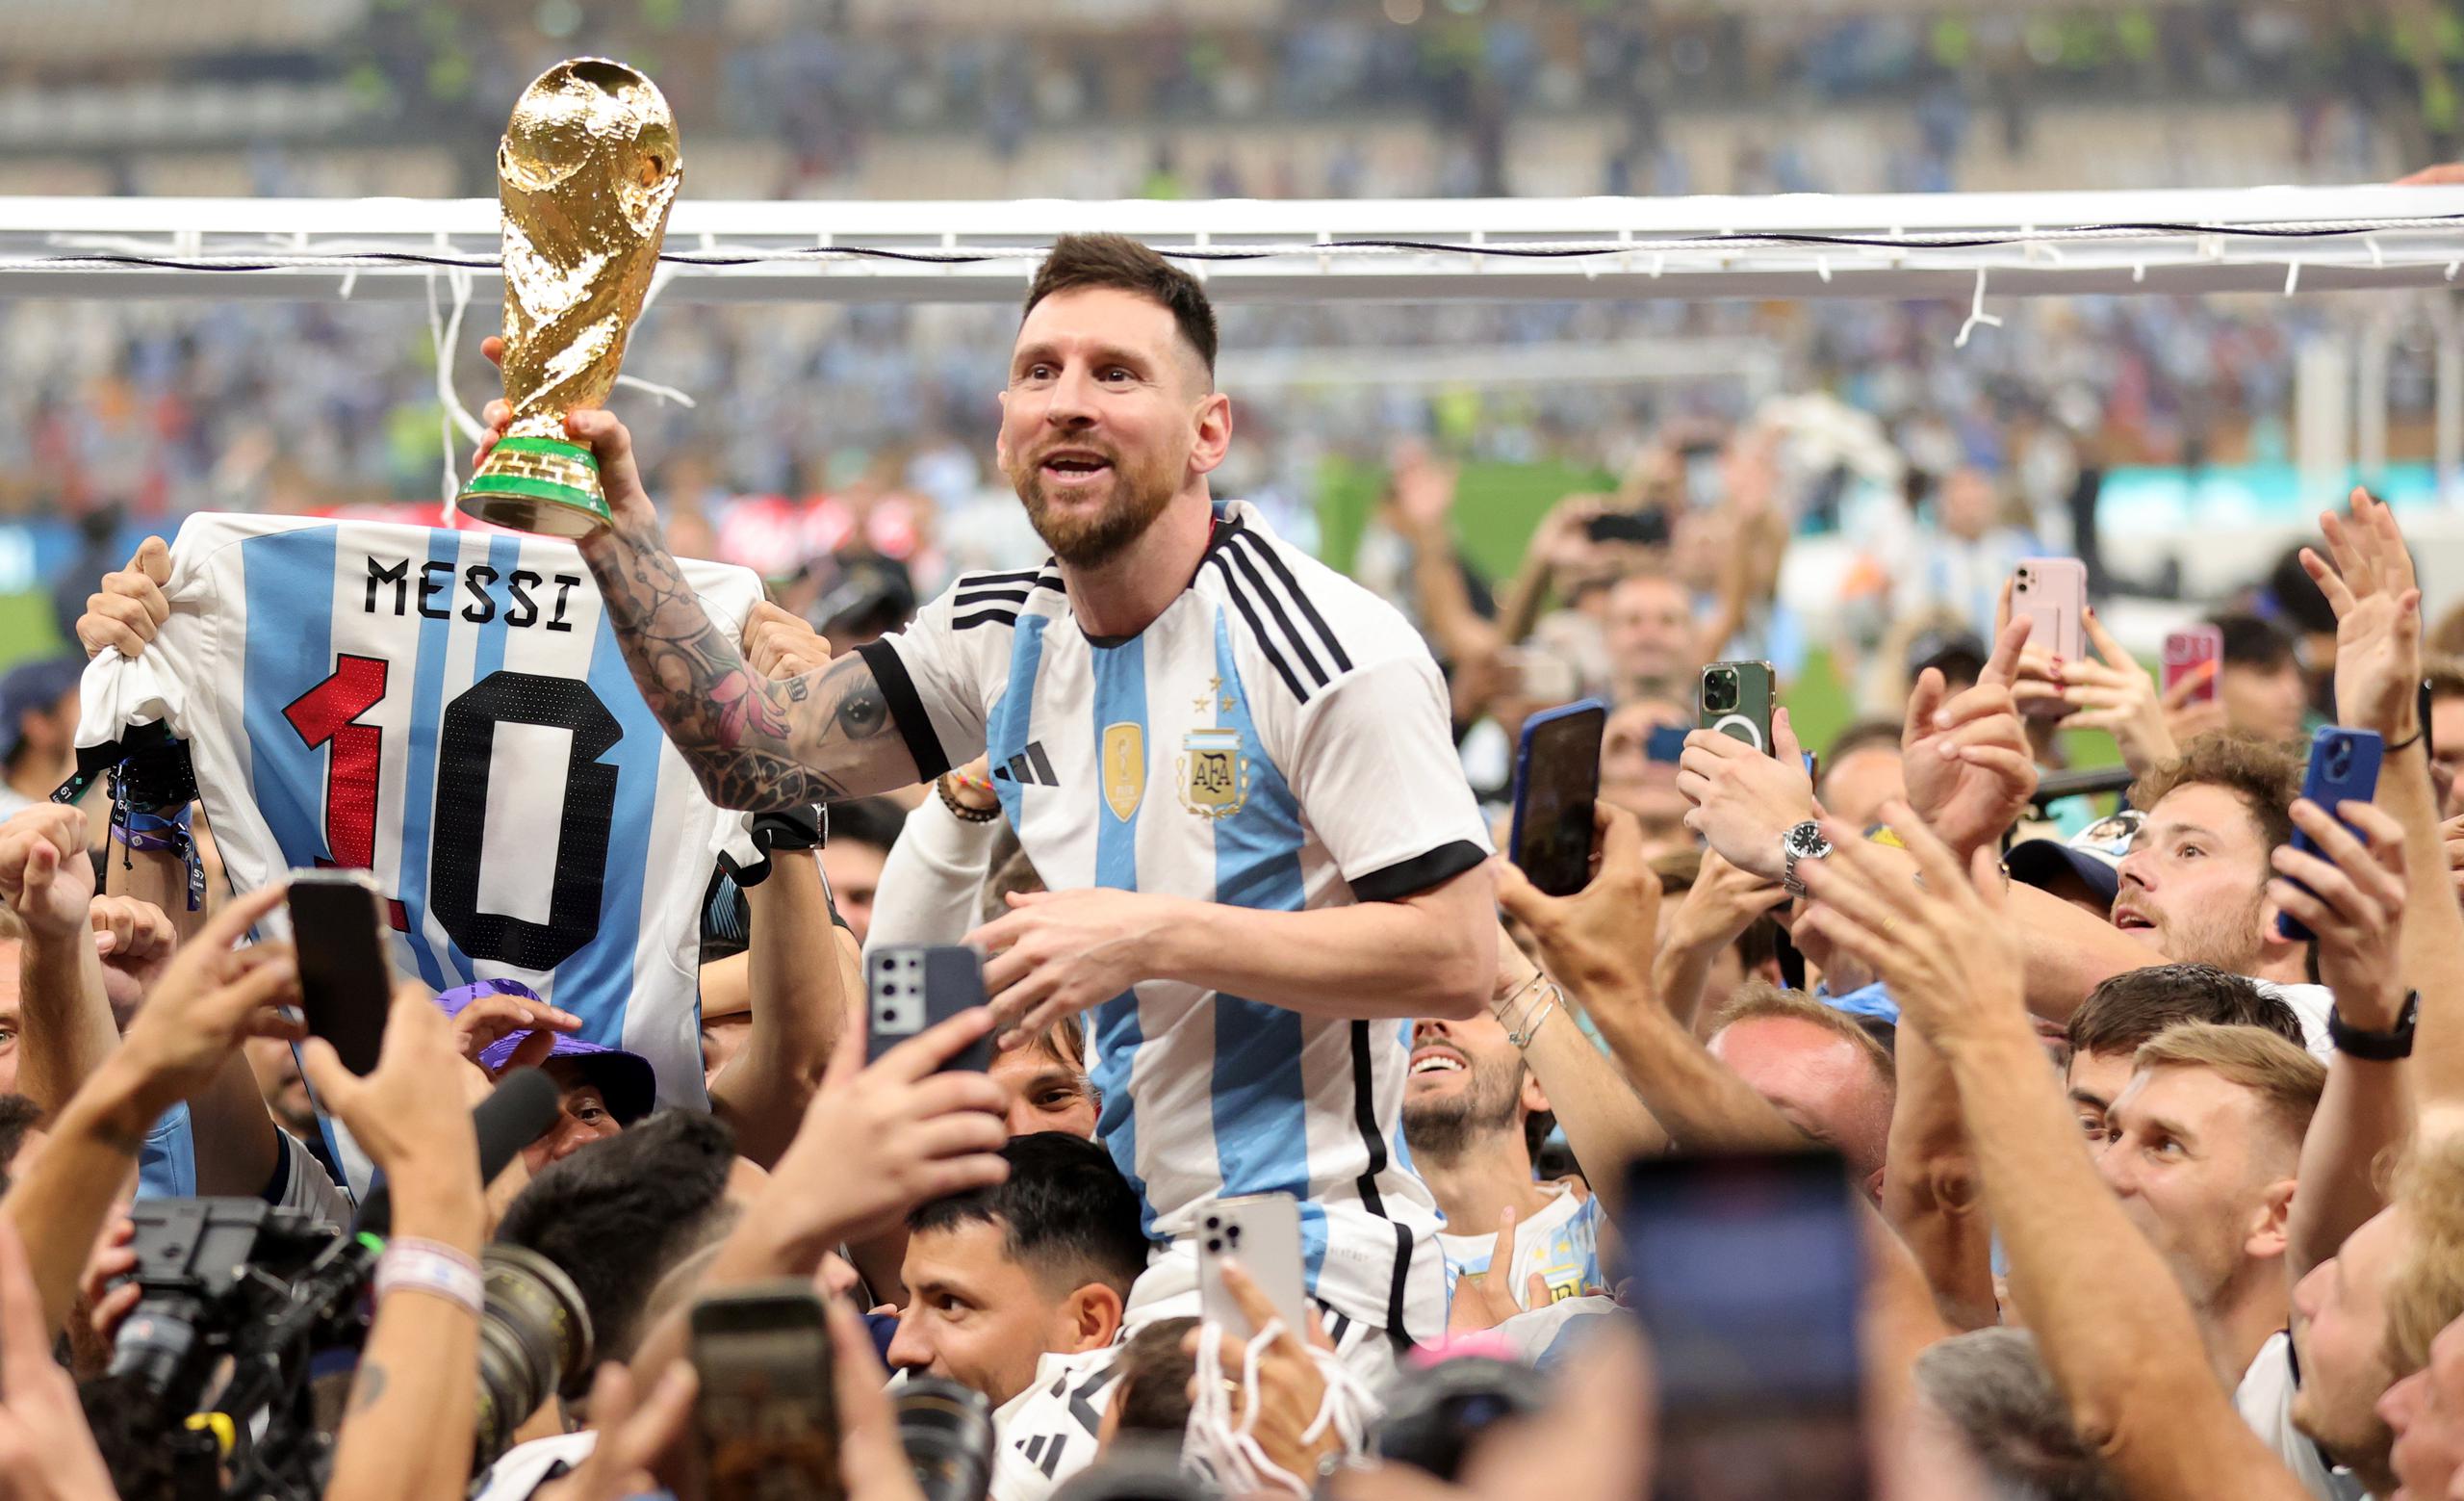 El capitán de la selección argentina de fútbol, Lionel Messi, aquí siendo cargado tras guiar a Argentina a ganar la Copa Mundial, hoy podría sumar el premio The Best a esa gesta.